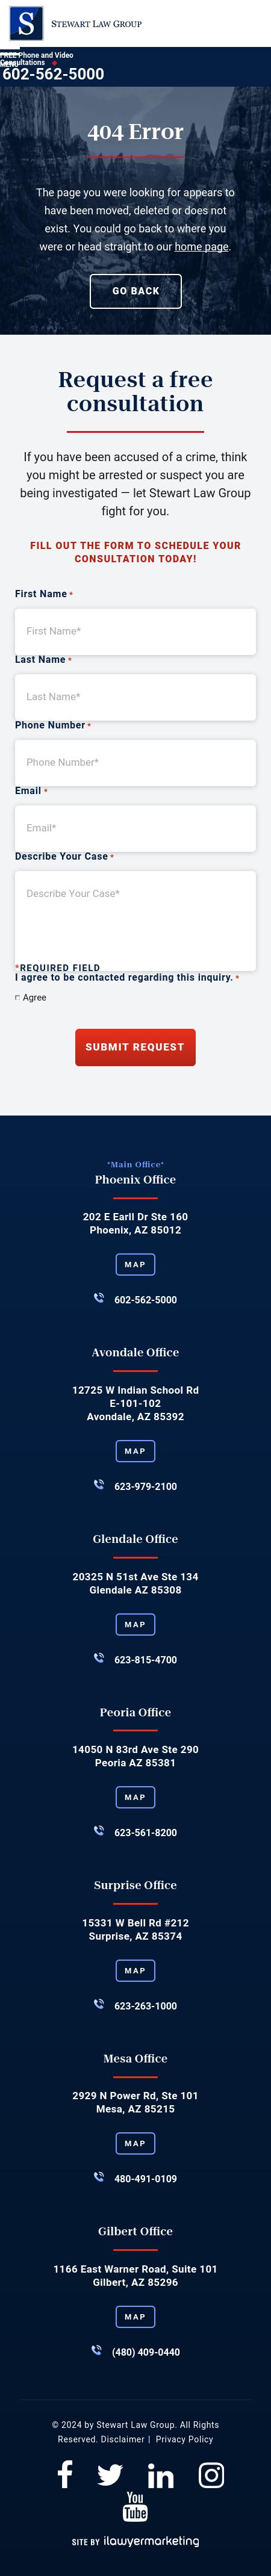 Stewart Law Group, LLC - Peoria AZ Lawyers